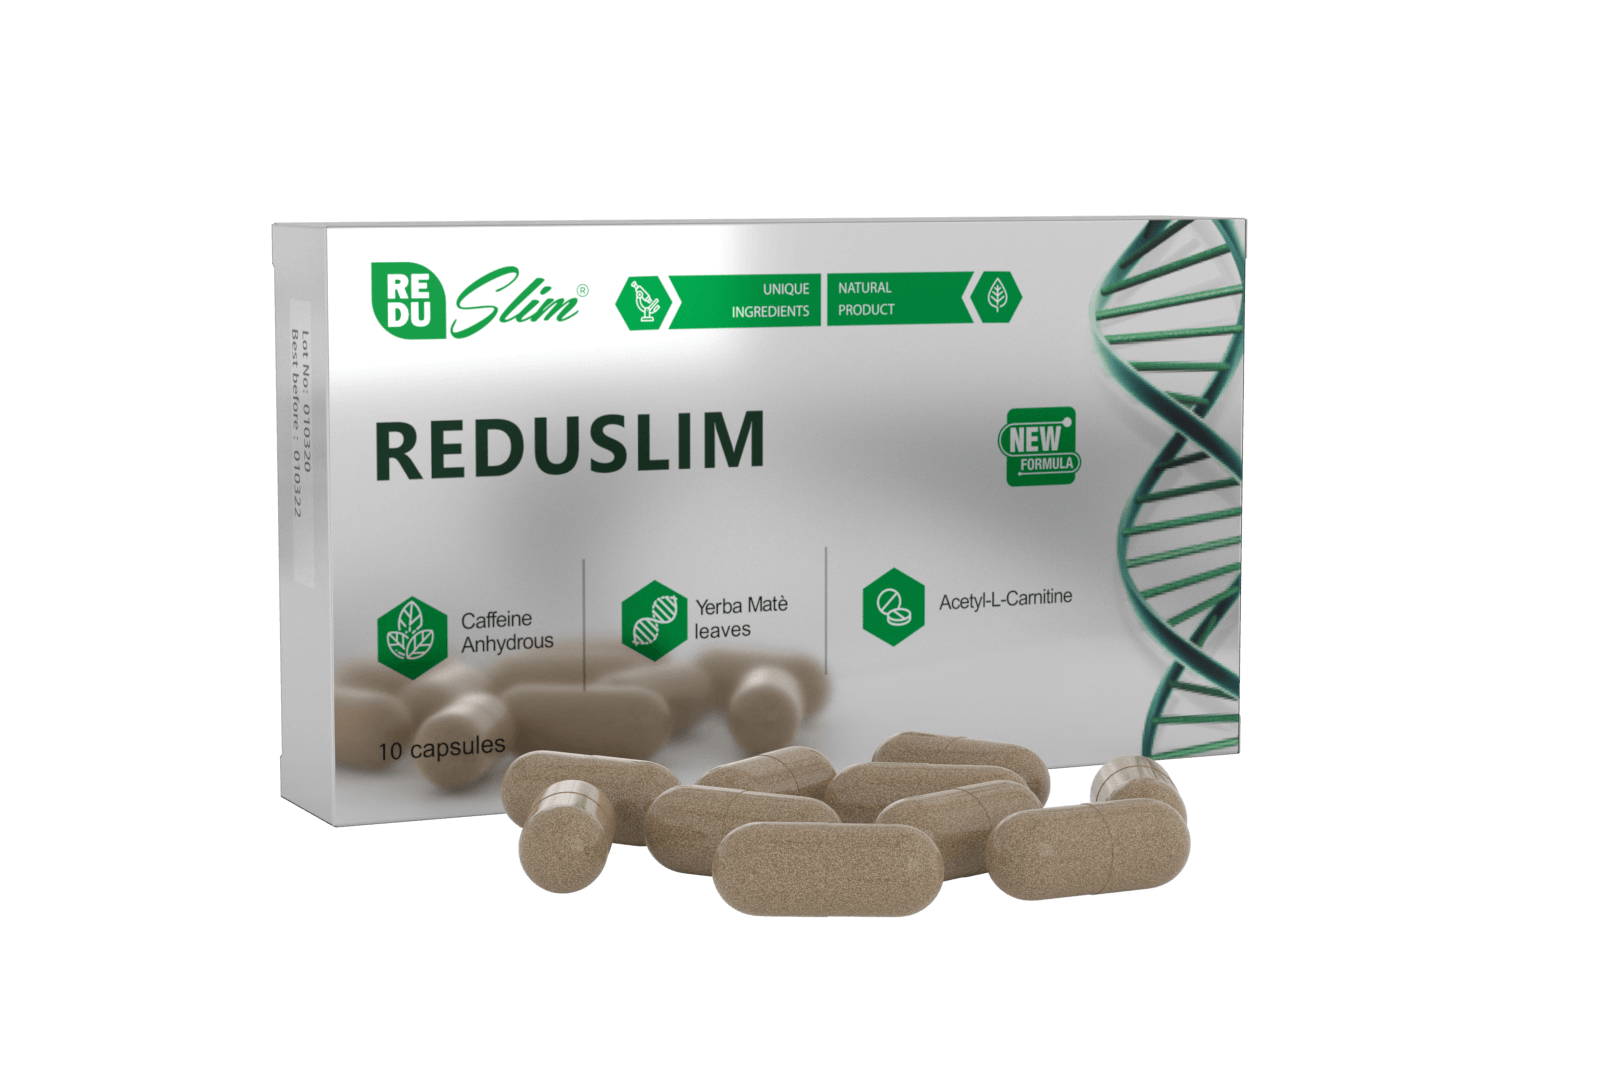 REDUSLIM-Kapseln: Ein wirksames Produkt zur Gewichtsabnahme mit natürlicher Zusammensetzung